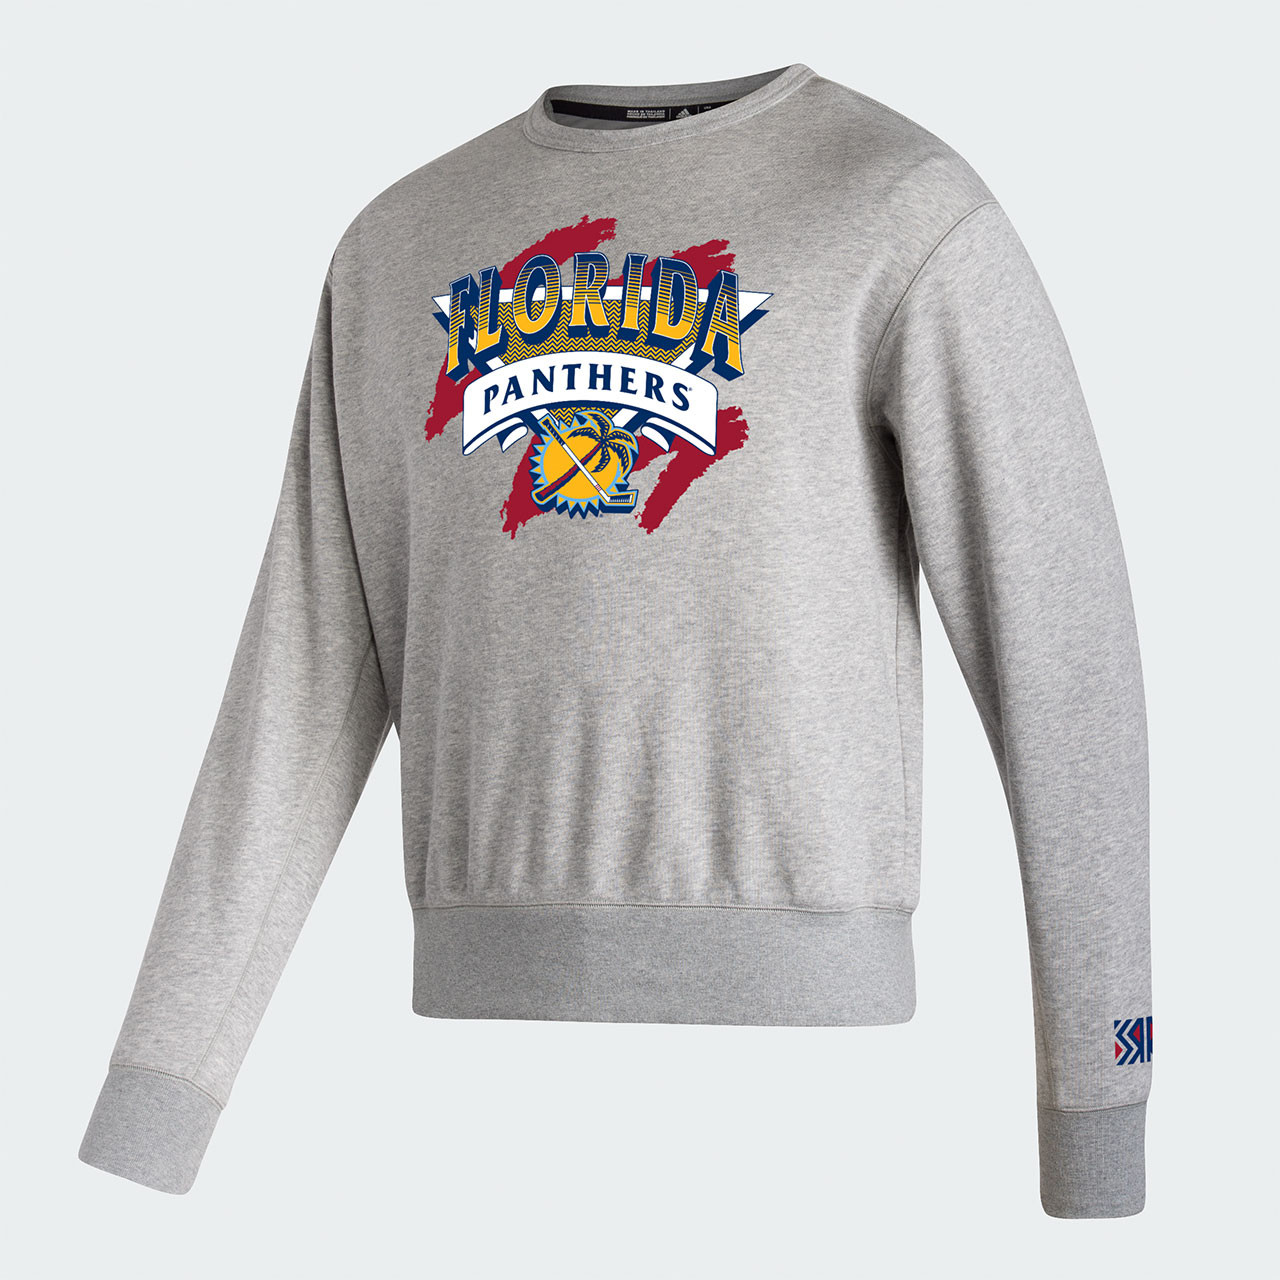 Personalized NHL Florida Panthers Reverse Retro Kits Unisex Tshirt